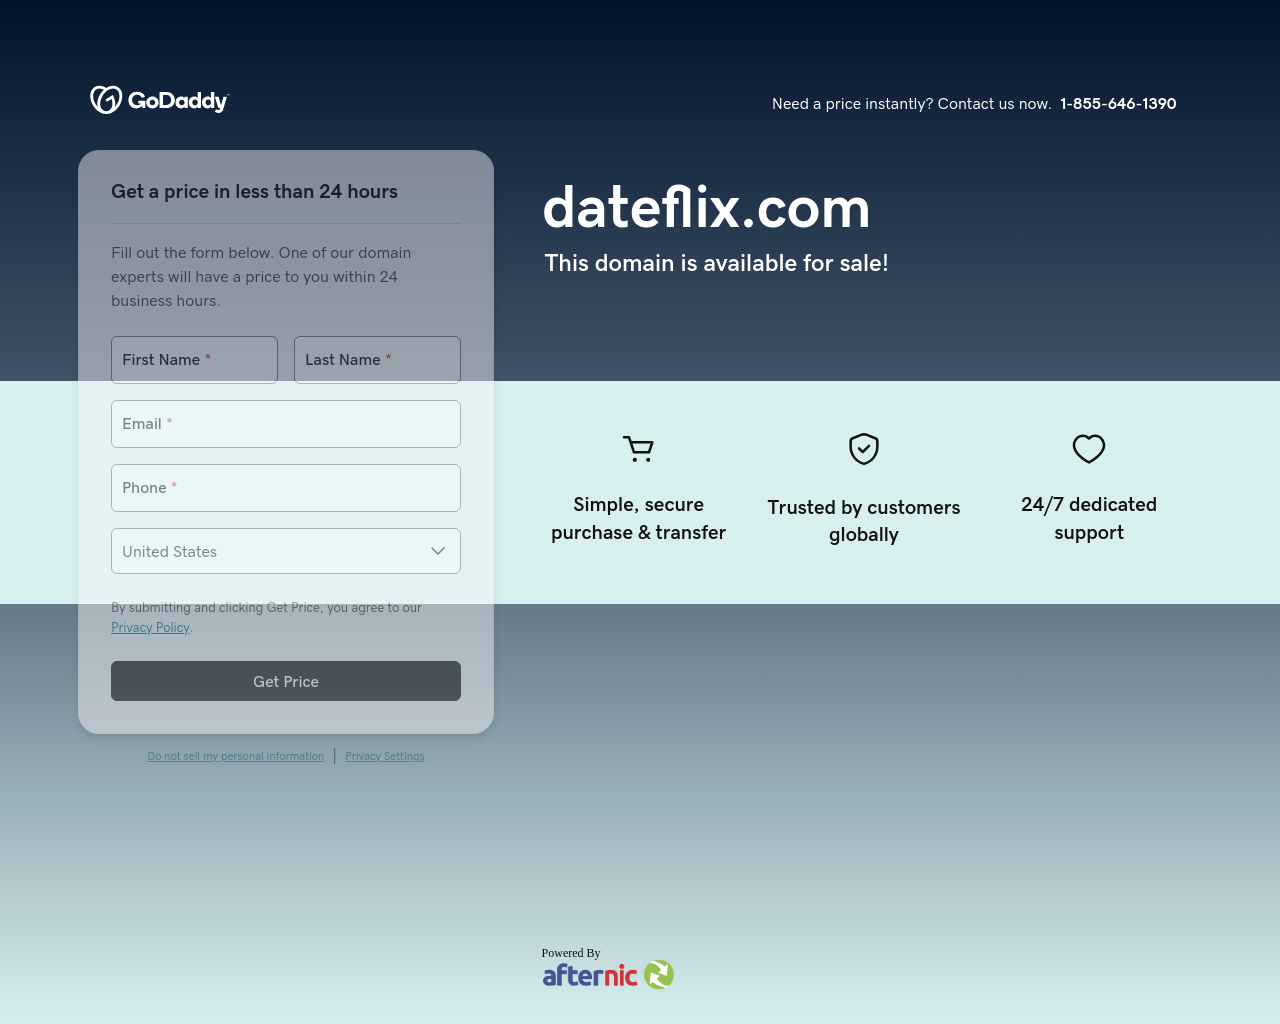 dateflix.com